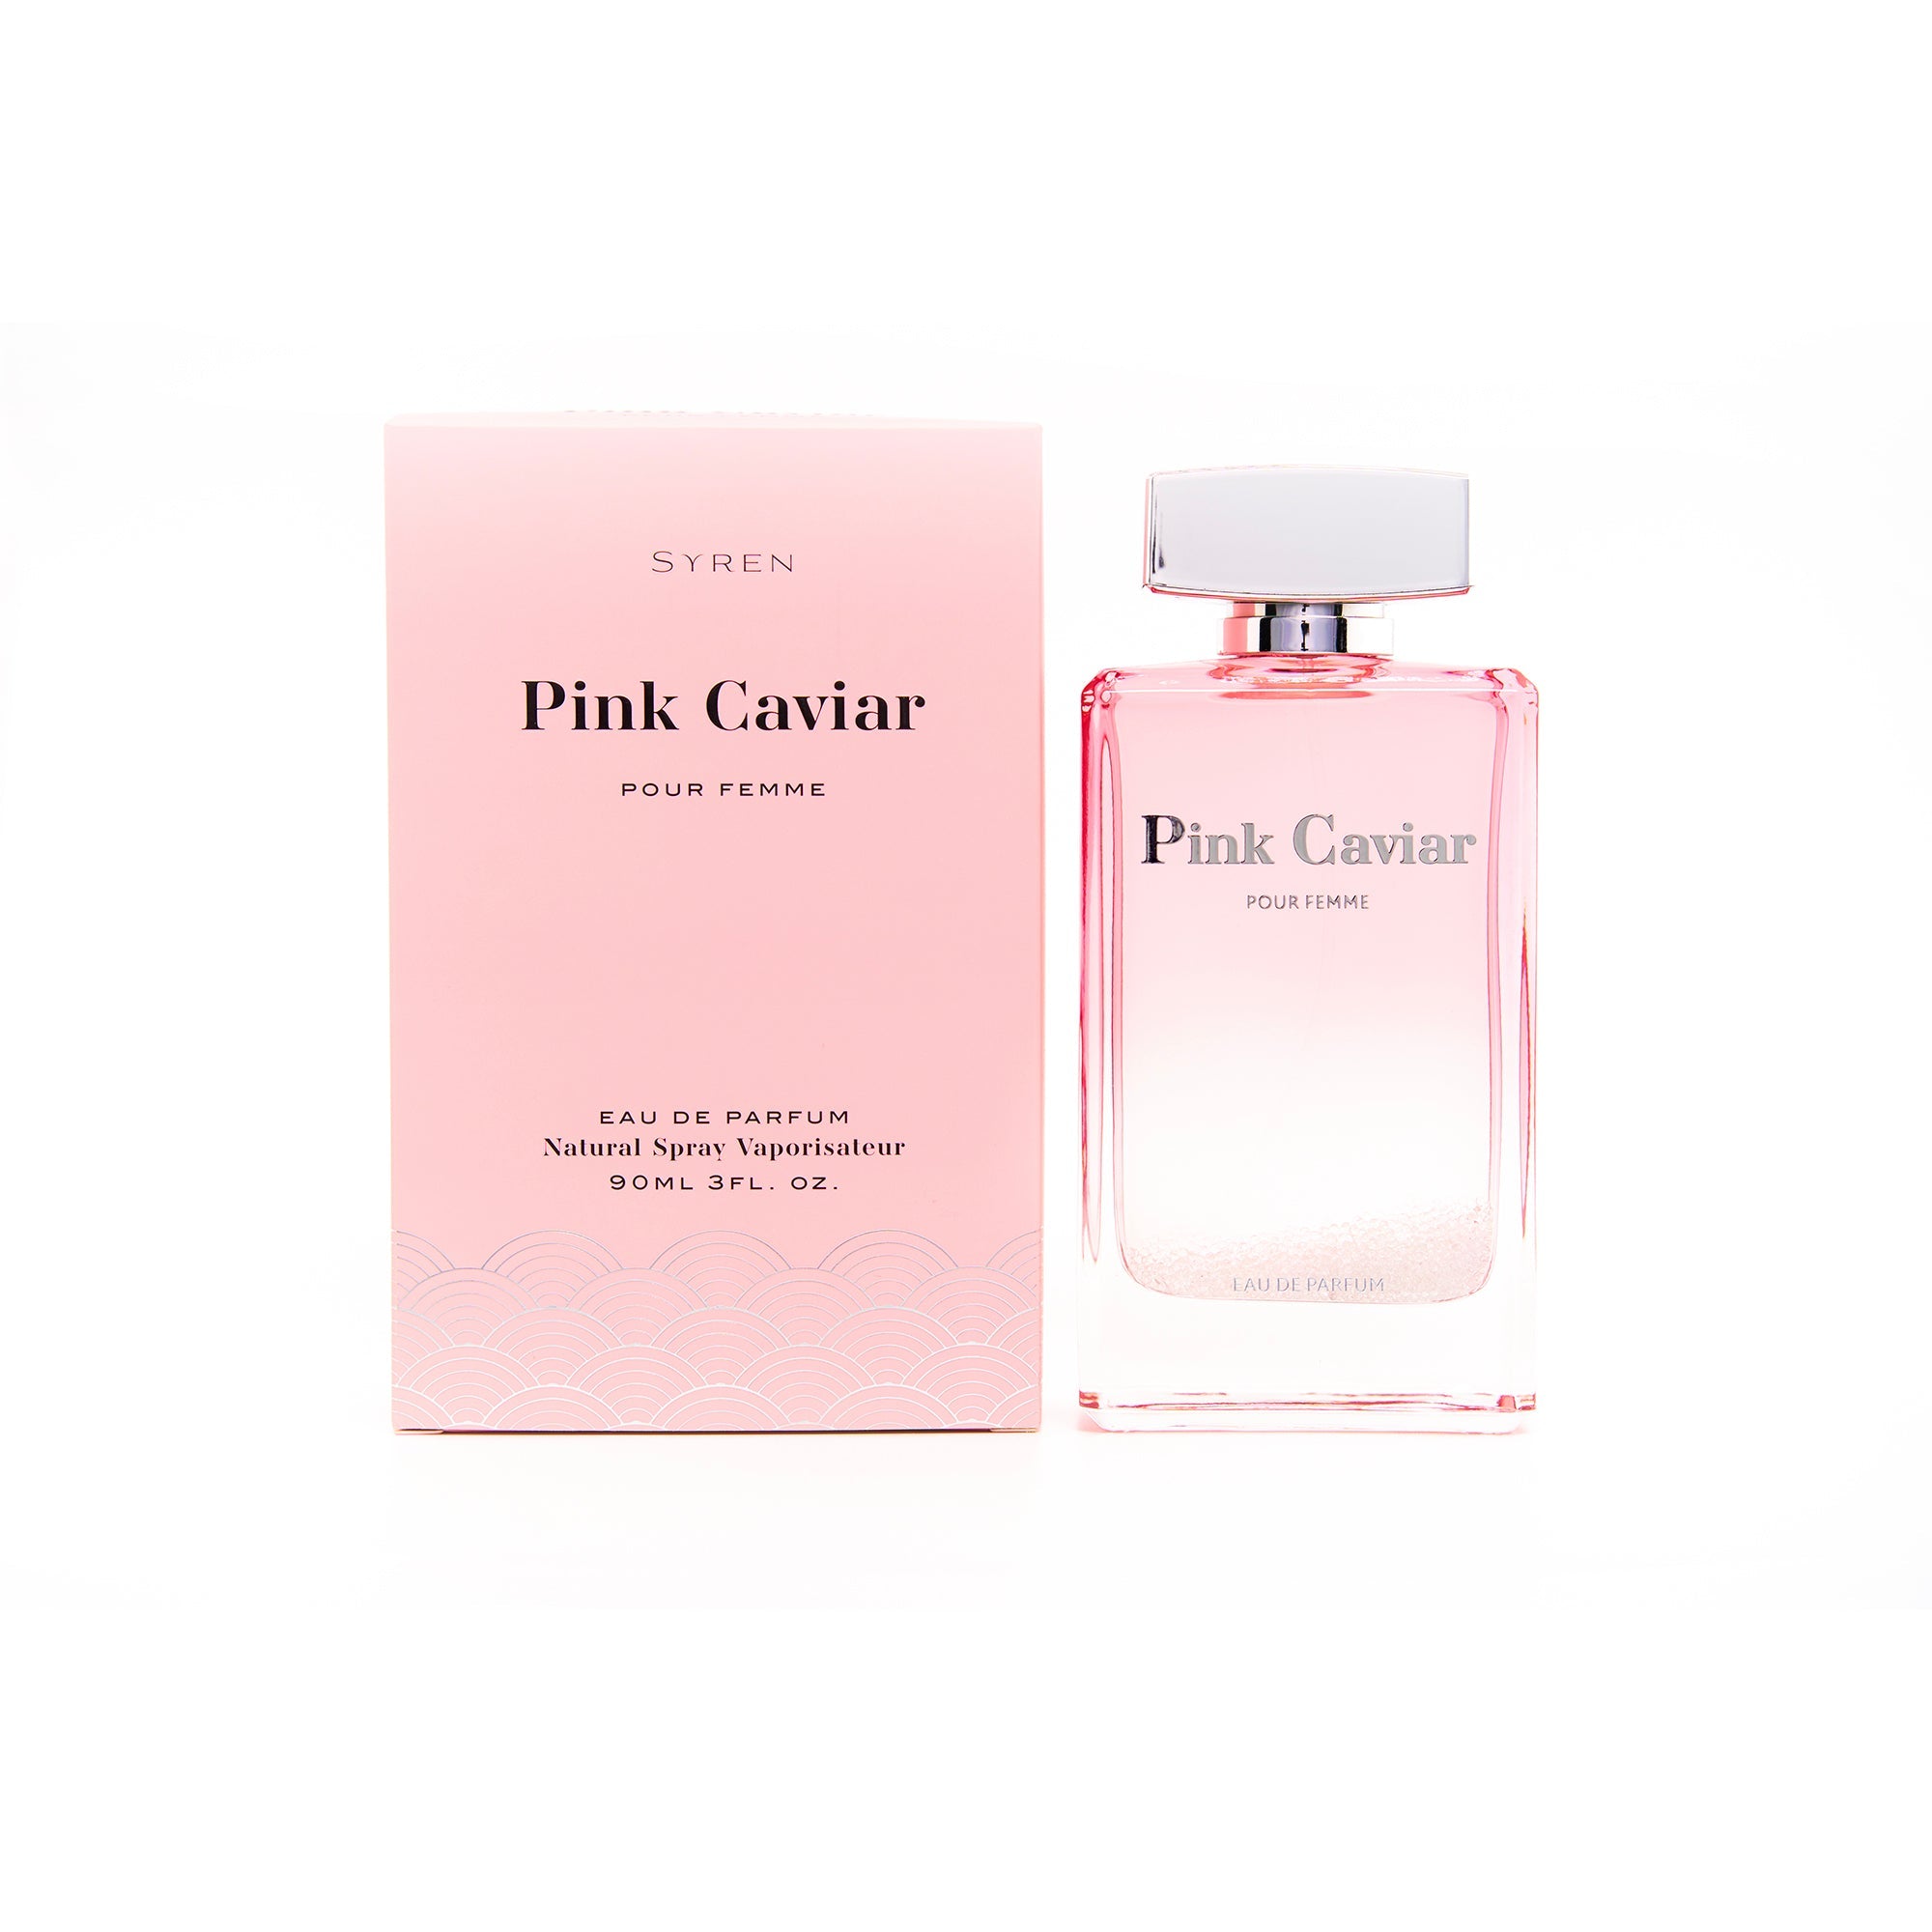 Pink Caviar Pour Femme Eau de Perfum Spray for Women - 3.0 oz.